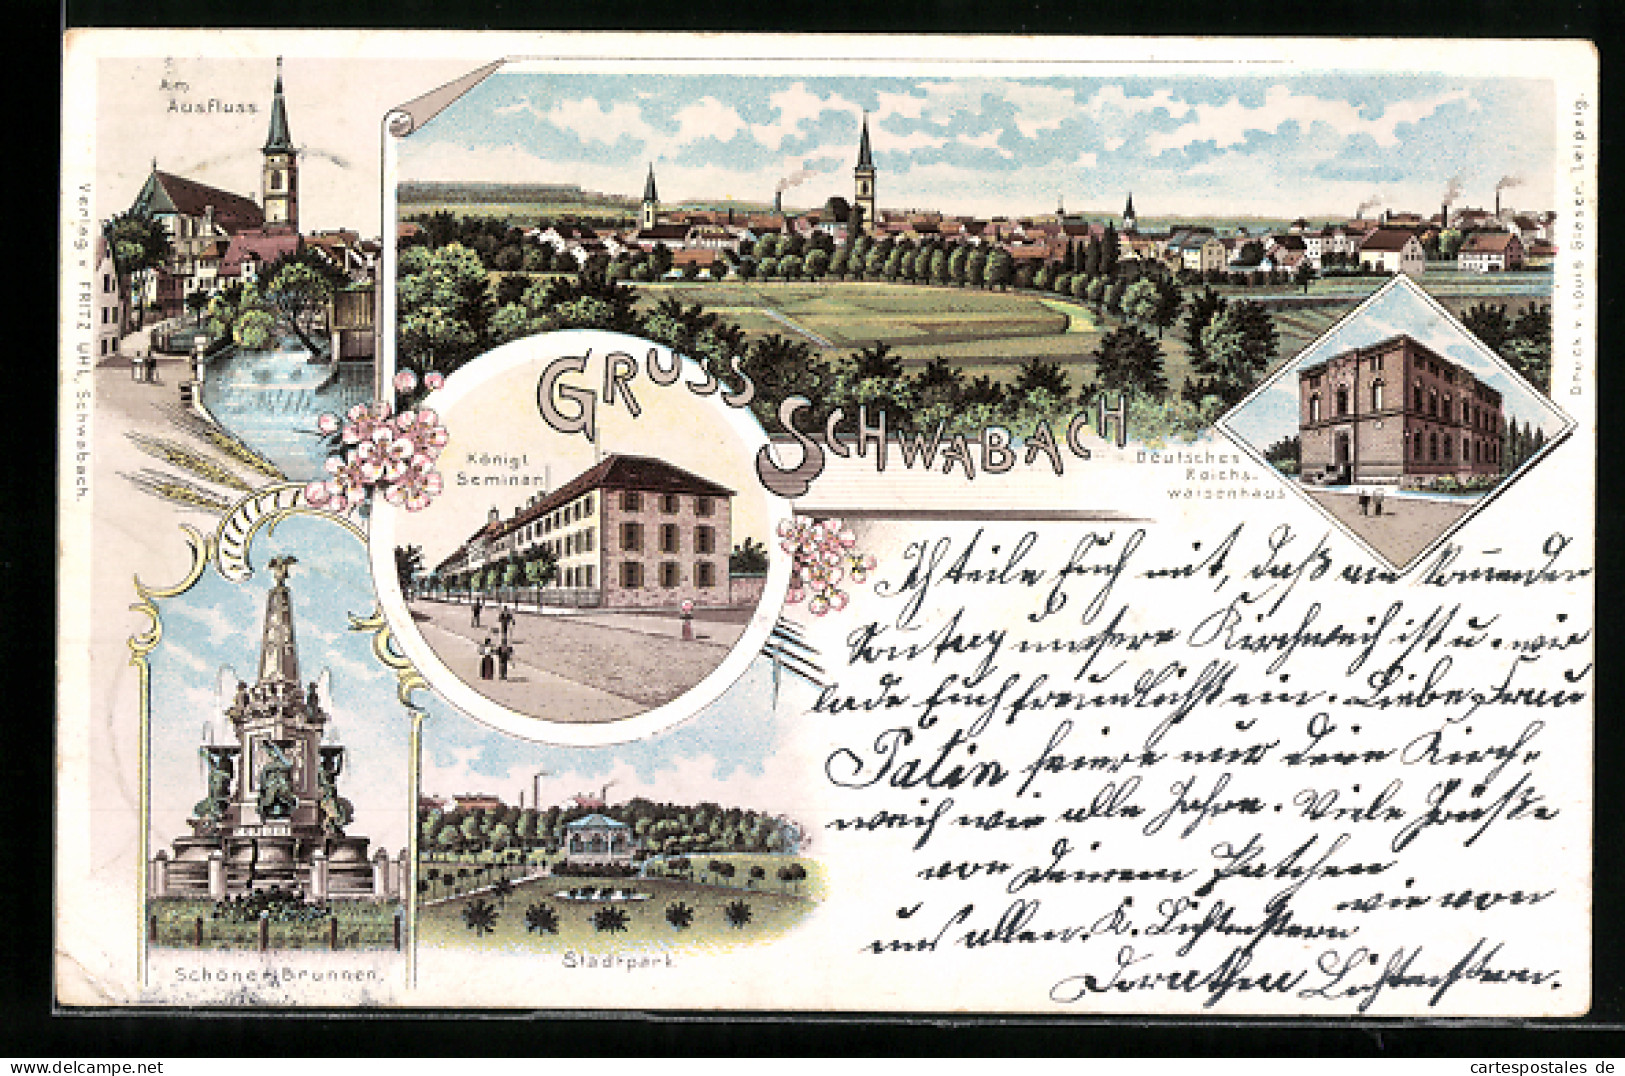 Lithographie Schwabach, Deutsches Reichswaisenhaus, Am Ausfluss, Königl. Seminar, Schöner Brunnen, Stadtpark  - Schwabach